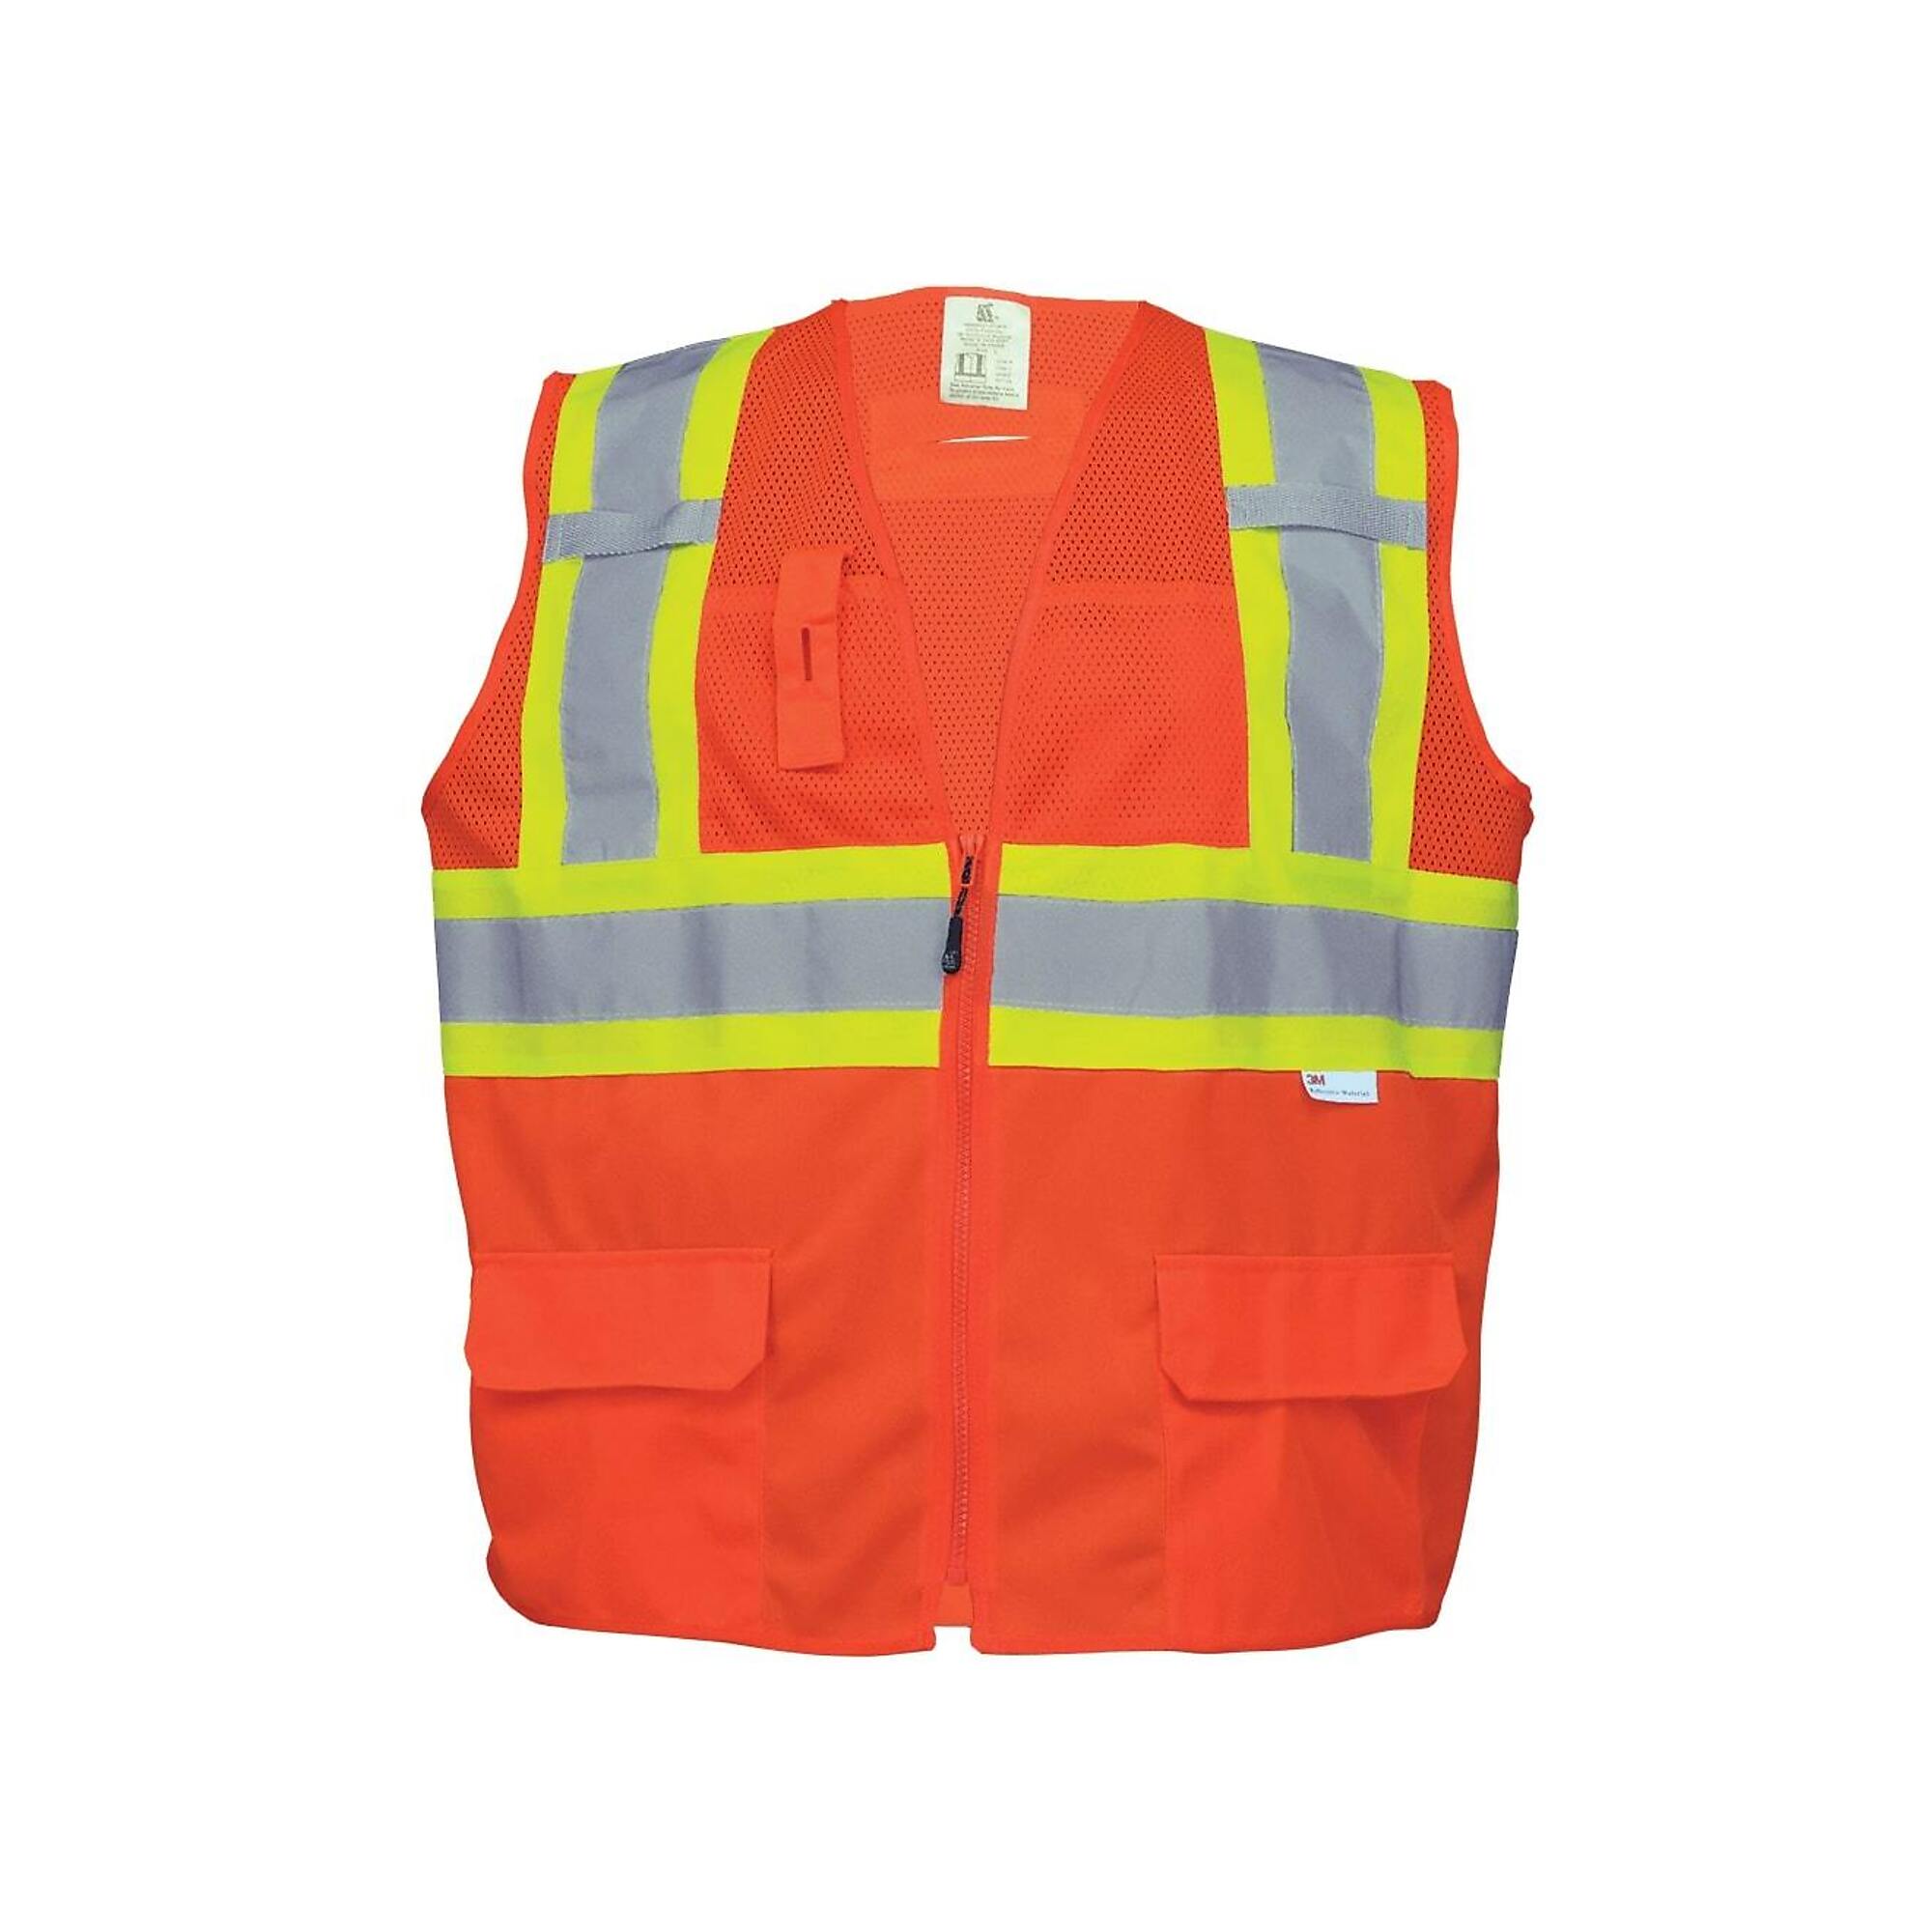 FrogWear, HV Orange, Class 2 6 Pocket, Solid/Mesh Vest, Size L, Color High-Visibility Orange, Model GLO-0047-L